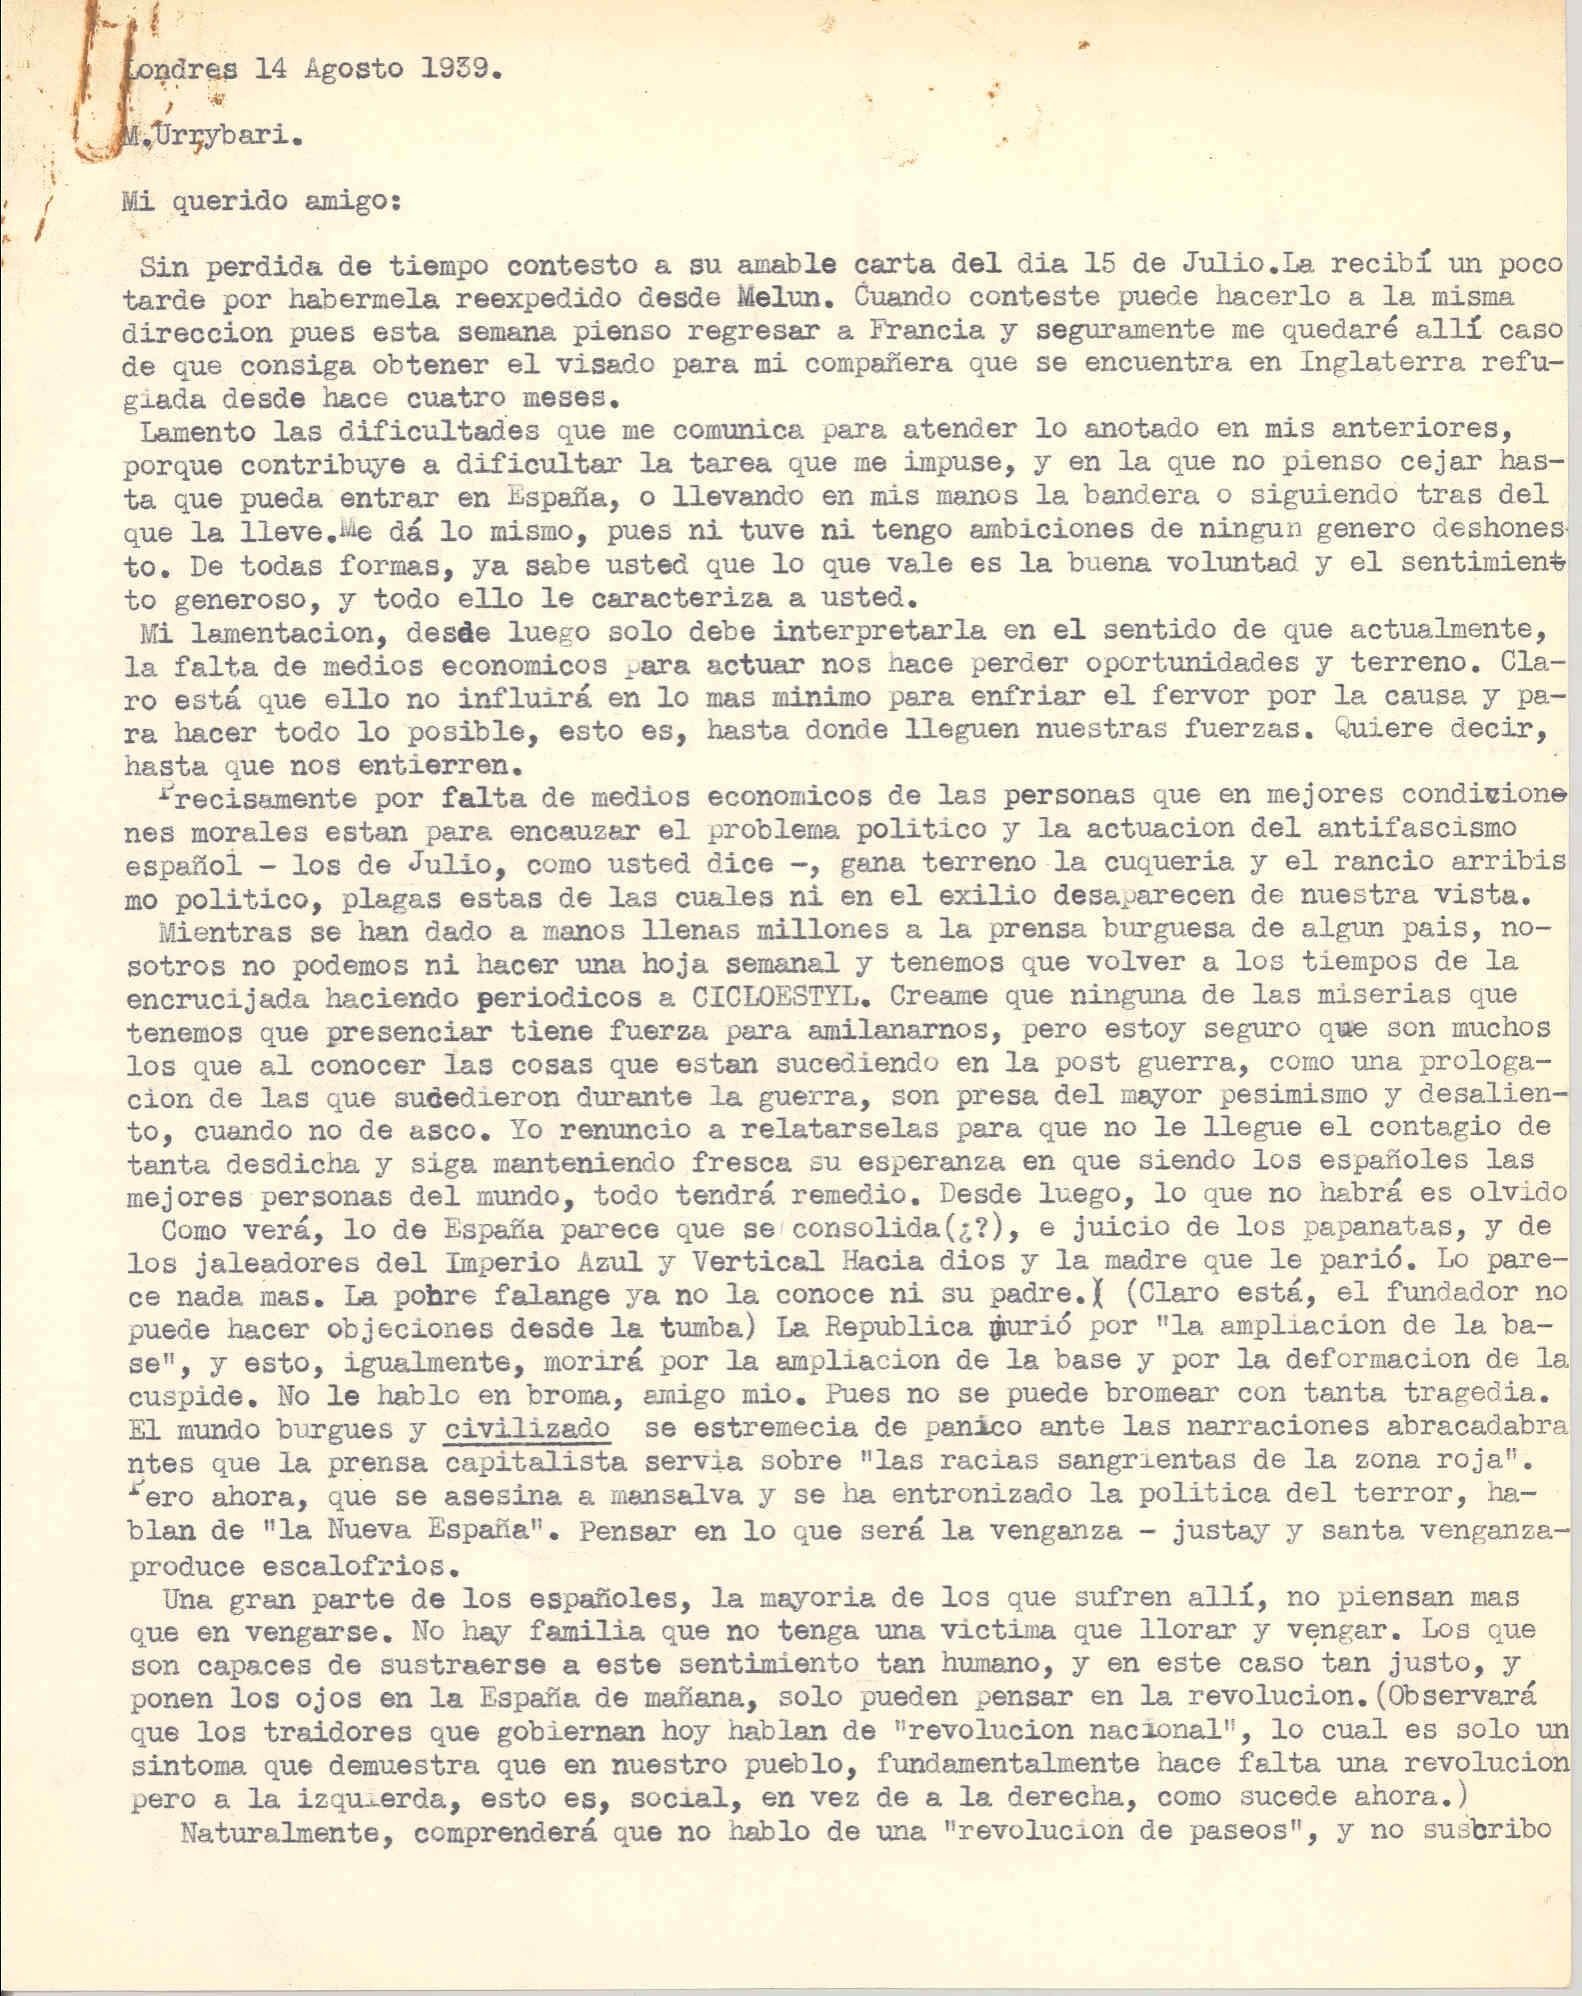 Carta de Uribarri en la que lamenta la influencia de los aliados de Negrín en el gobierno de Batista, quedando el resto del exilio español desplazado; expone las dificultades para recaudar fondos y evoca el inicio de la guerra en Valencia